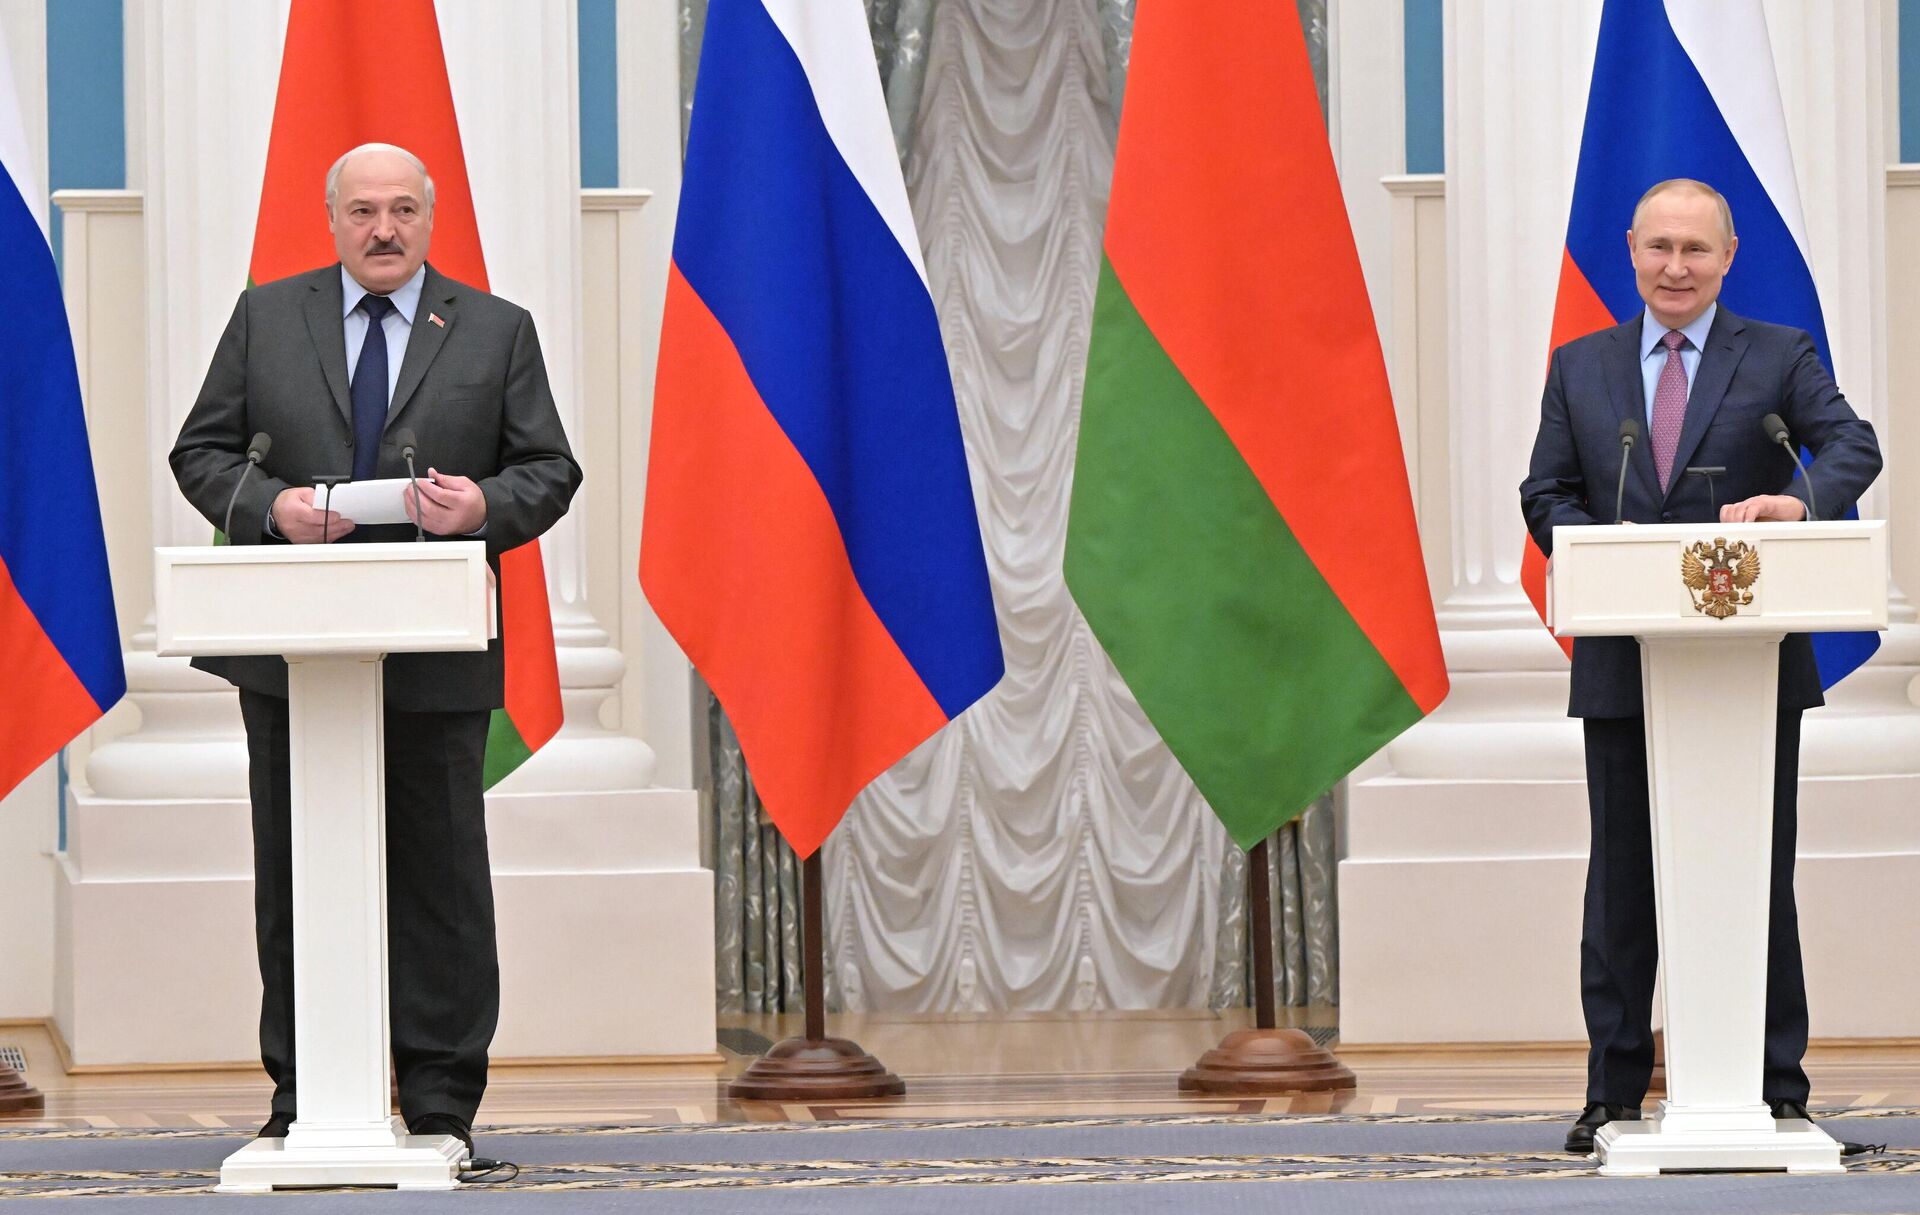 Президент РФ Владимир Путин и президент Беларуси Александр Лукашенко провели переговоры в Москве, 18 февраля 2022 - Sputnik Латвия, 1920, 18.02.2022